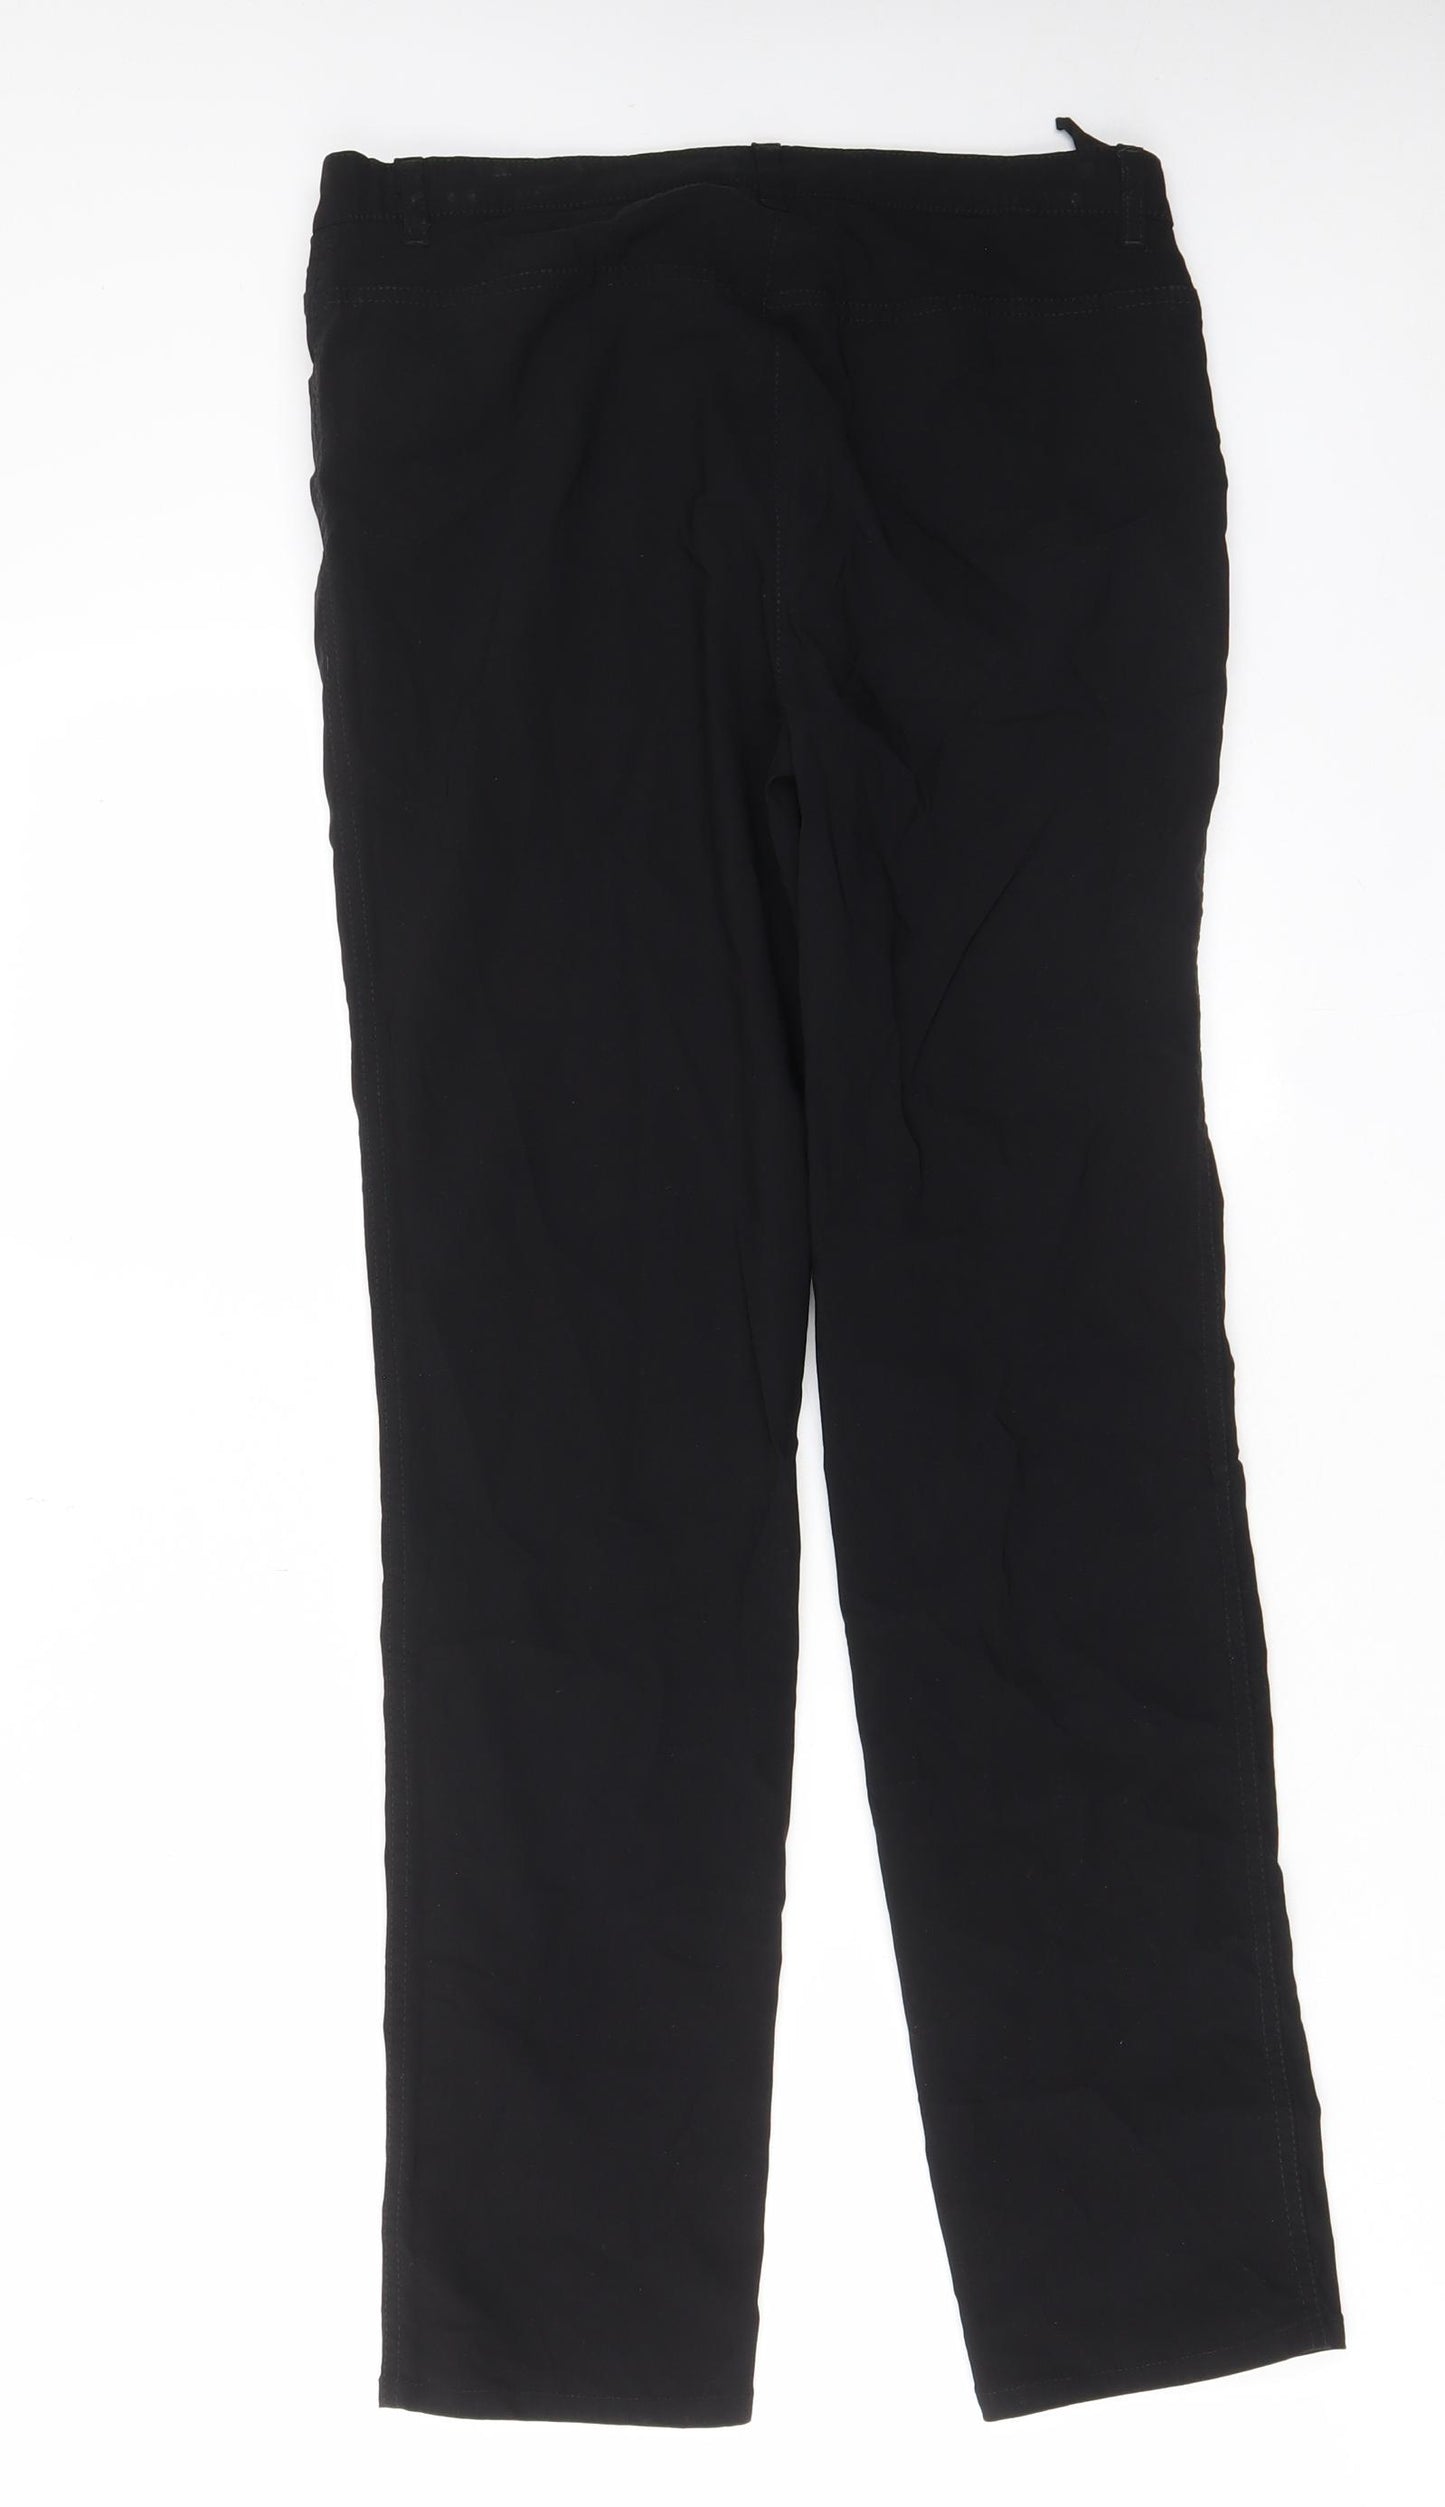 Stehmann Womens Black Viscose Trousers Size 10 L29 in Regular Zip - Zips, Pockets